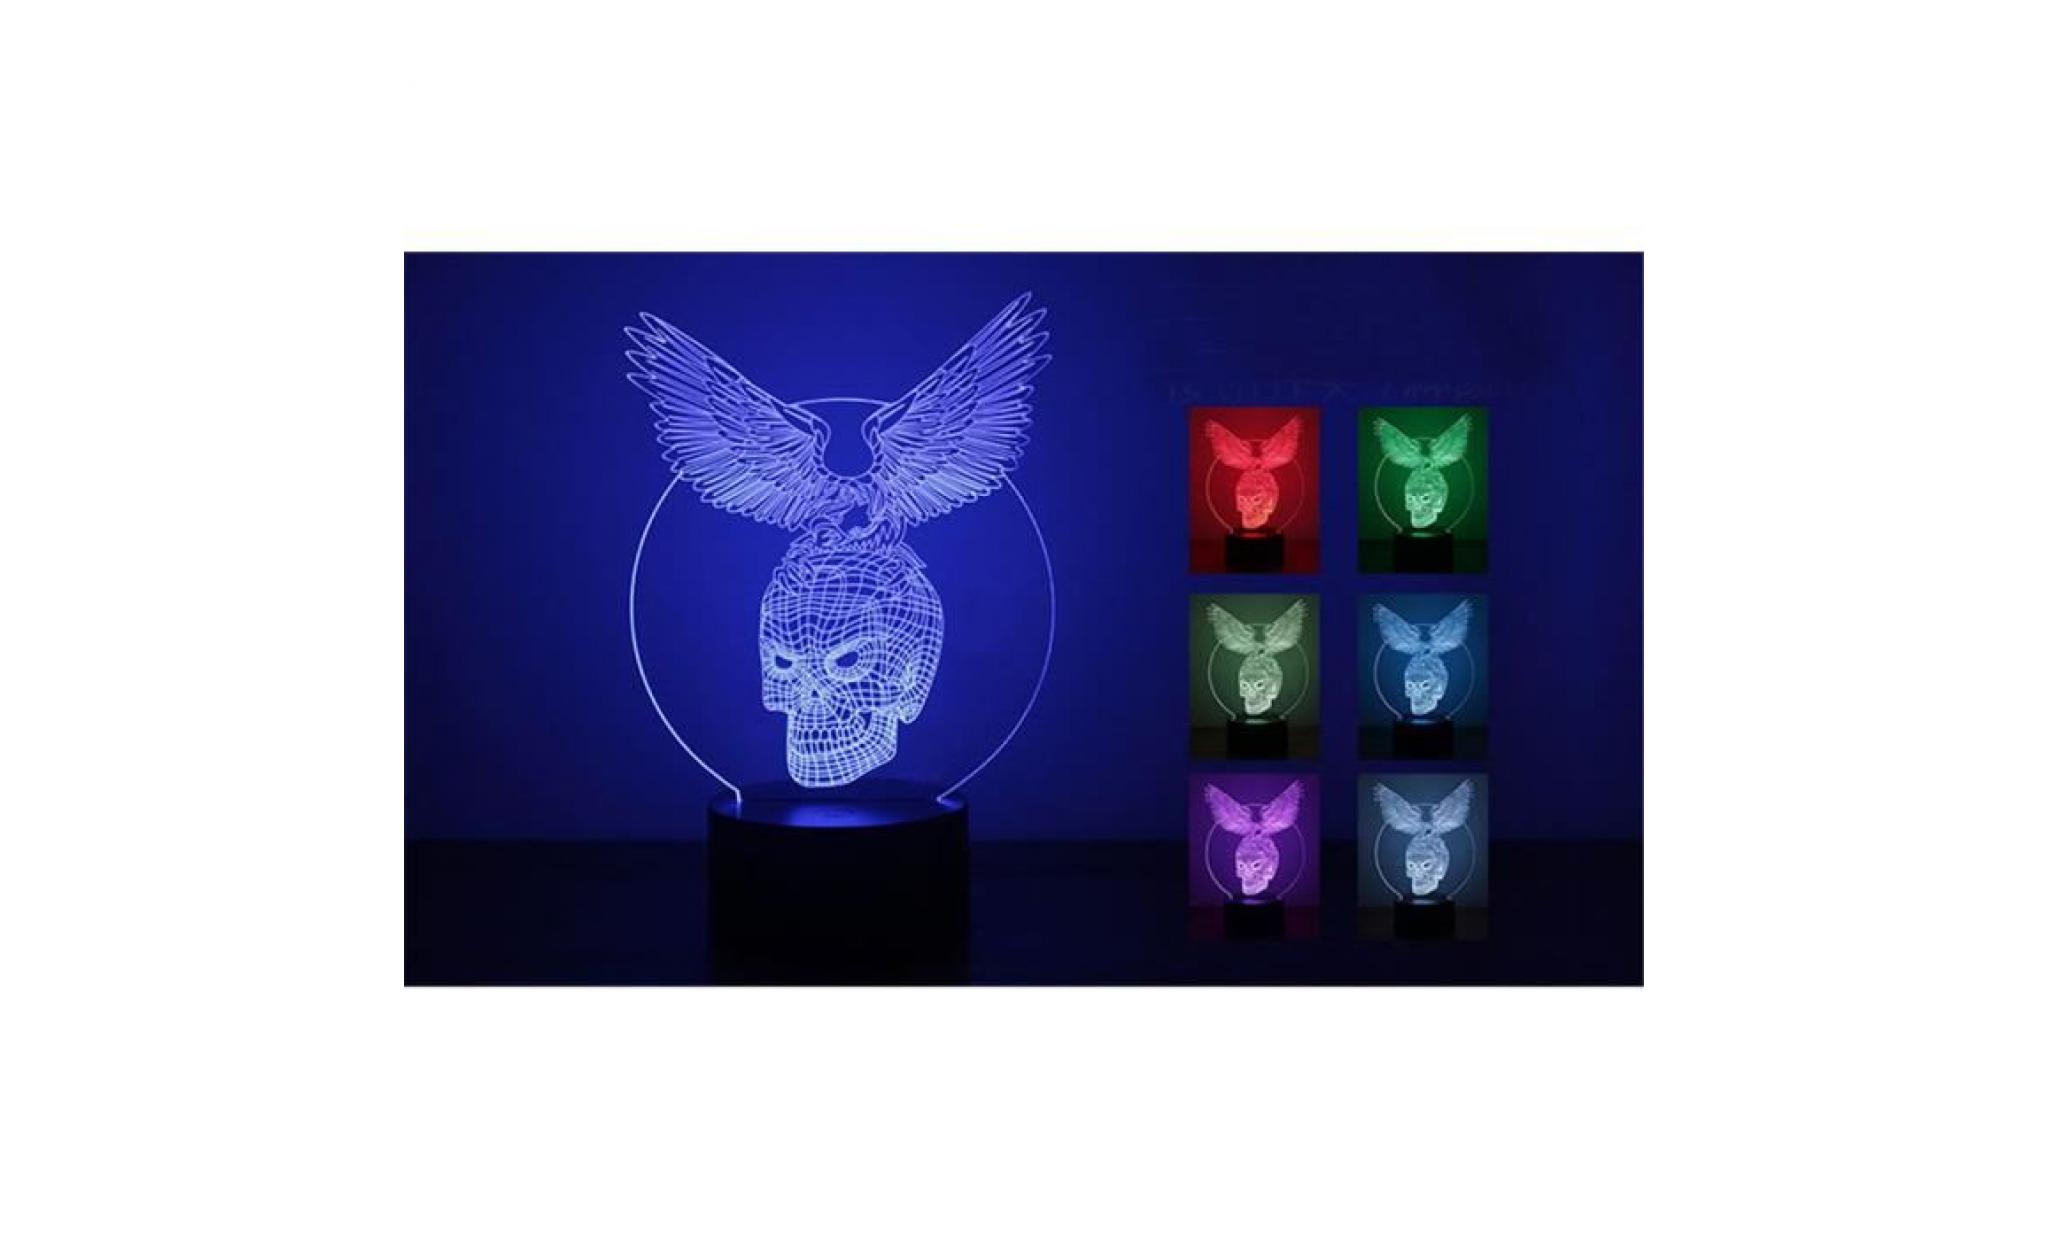 yum® eagle skull 3d led night light lampes illusion optique 3d 7 couleurs pour la maison rouge pas cher